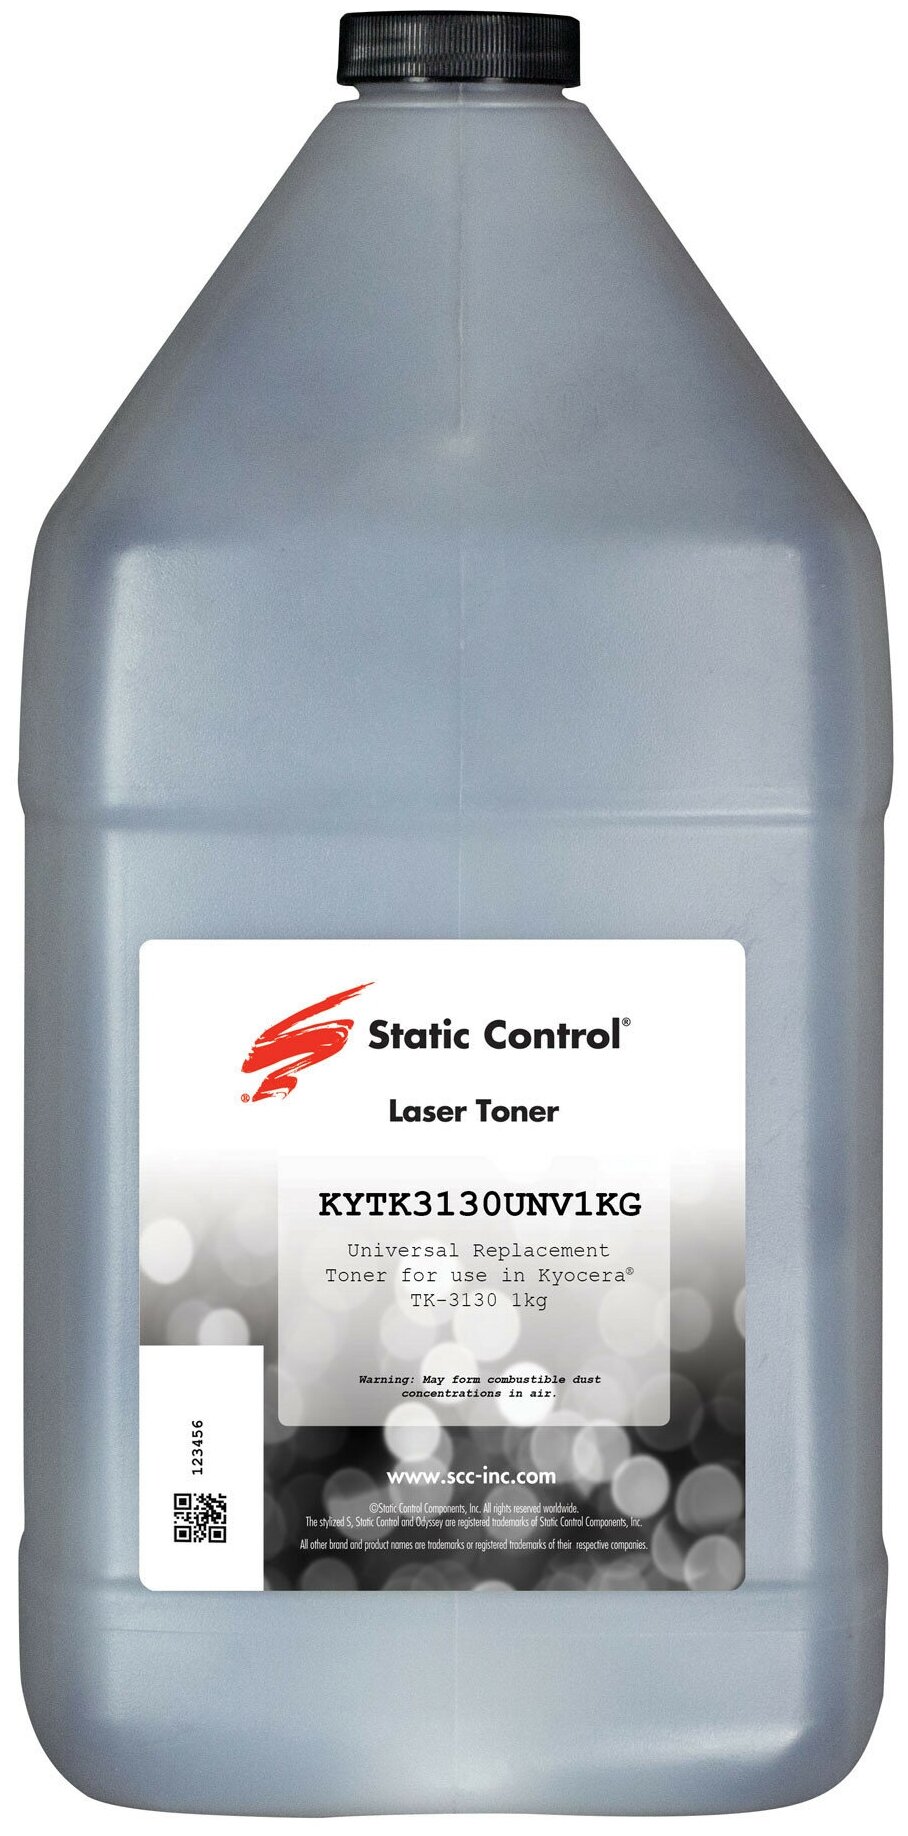 Тонер Static Control KYTK3130UNV1KG черный флакон 1000гр. для принтера Kyocera FS410042004300DN